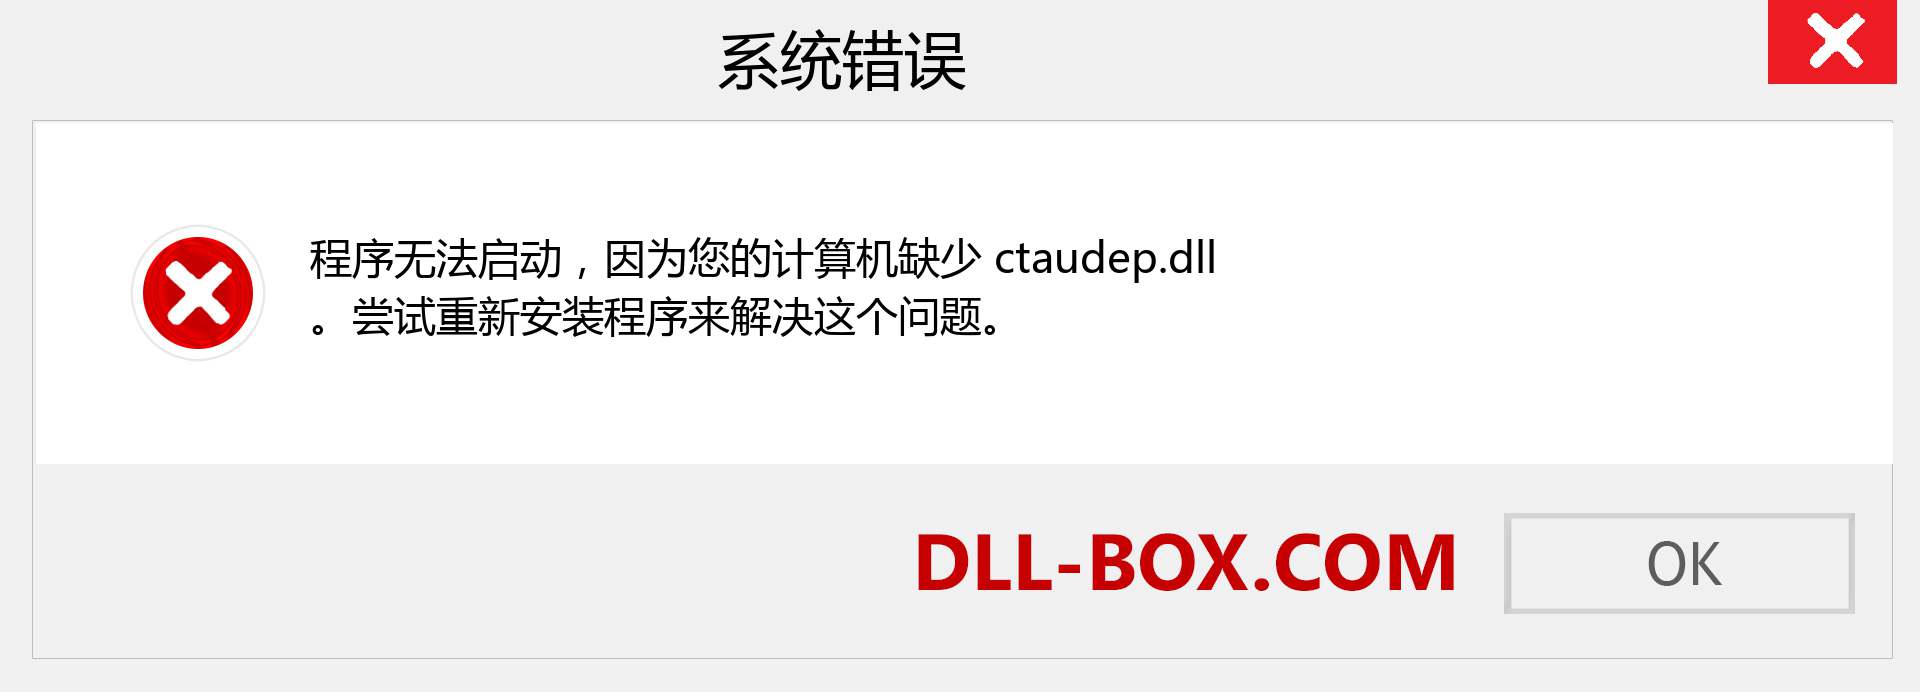 ctaudep.dll 文件丢失？。 适用于 Windows 7、8、10 的下载 - 修复 Windows、照片、图像上的 ctaudep dll 丢失错误